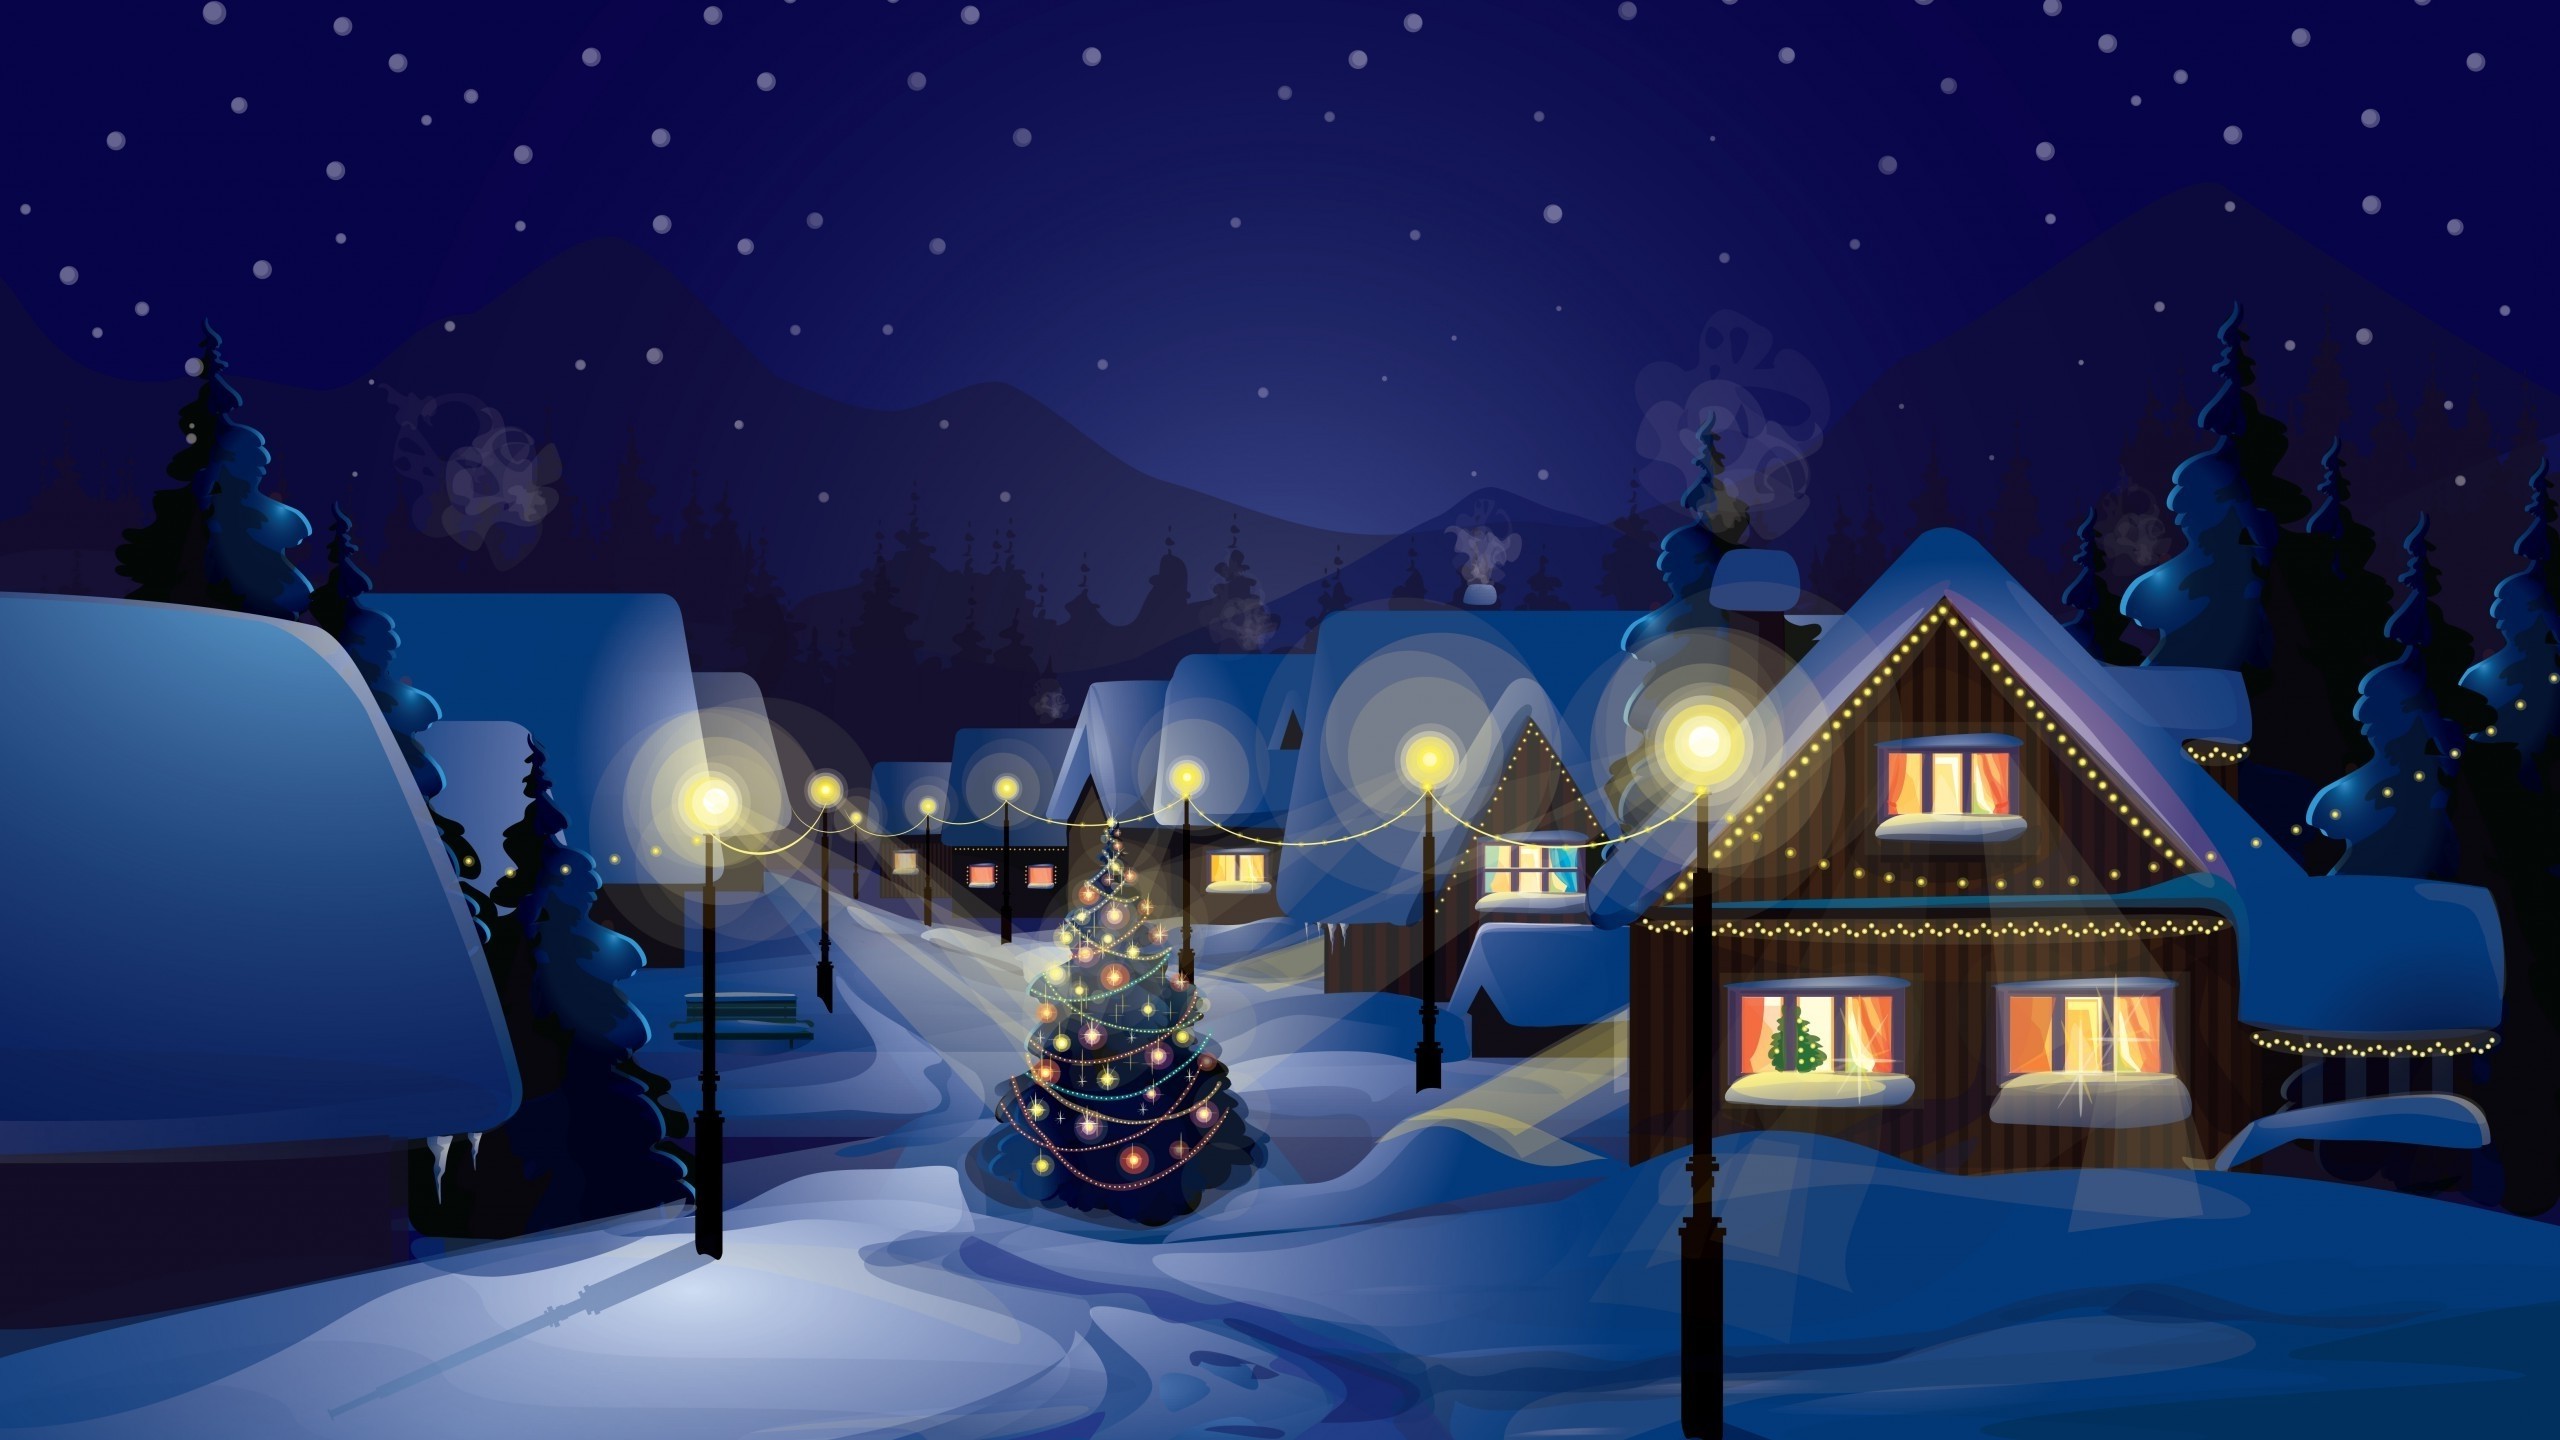 Lấy cảm hứng từ ngày lễ Giáng Sinh, bộ sưu tập hình nền Christmas Village Wallpapers sẽ cho bạn cảm giác thật ấm áp và lãng mạn. Hãy tải về ngay để thưởng thức khung cảnh làng giáng sinh rực rỡ trên màn hình của mình.